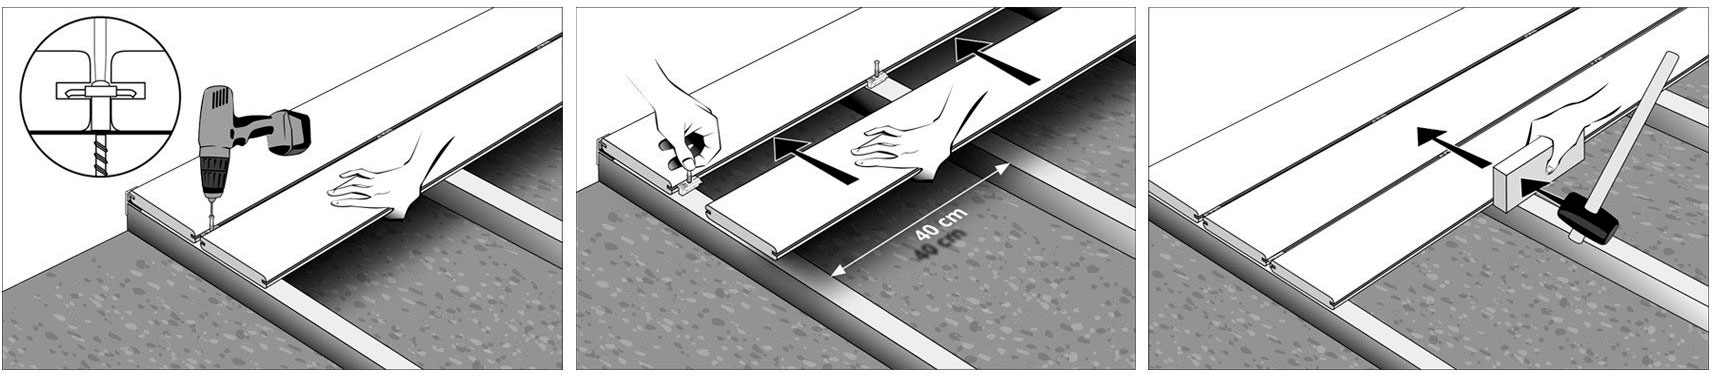 installatie van terrasplanken met onzichtbare clips